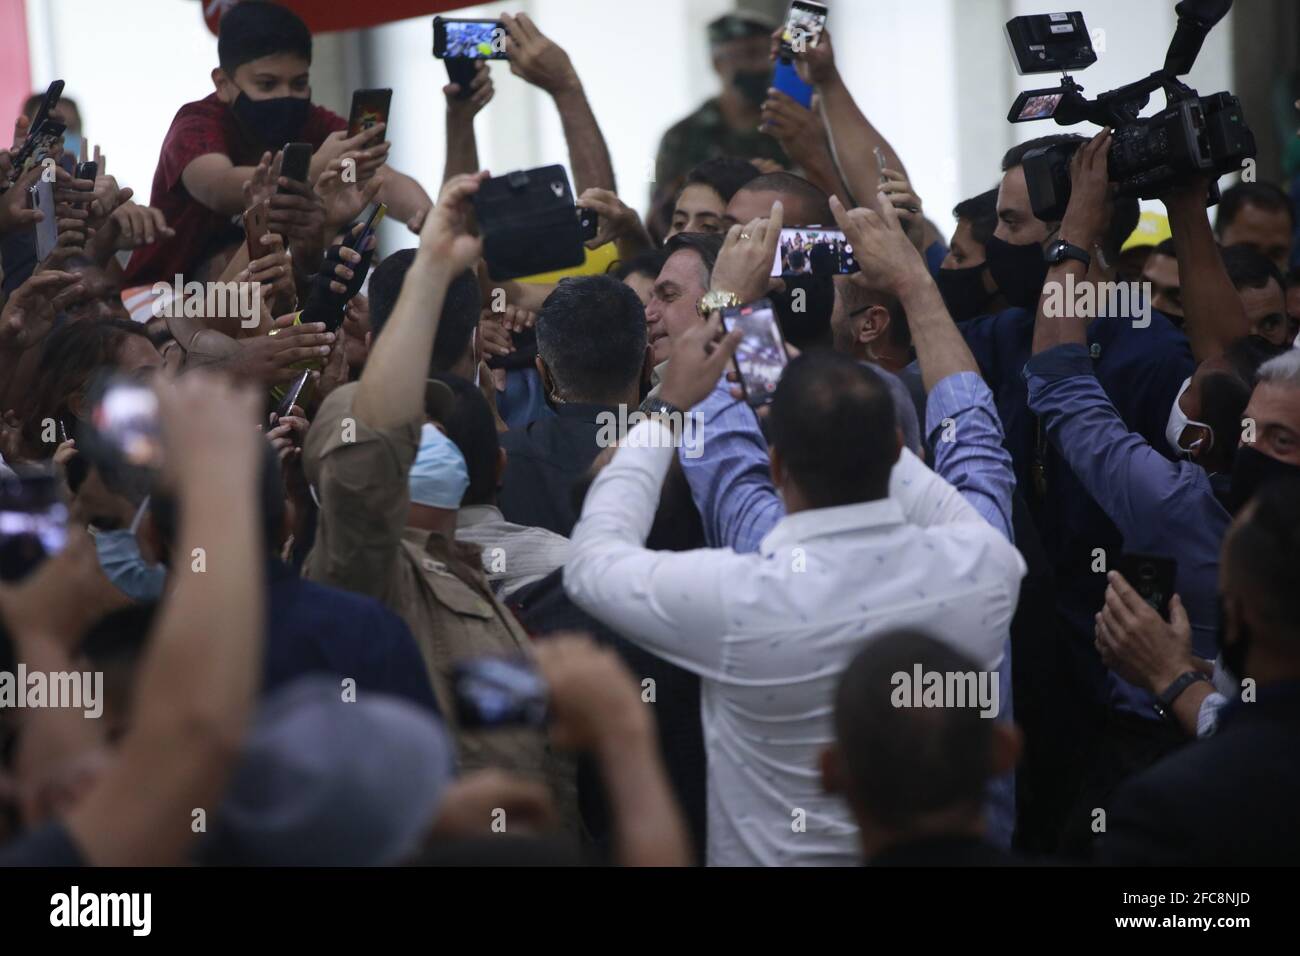 Manaus, AM 2021/23/04 - le Président Jair Bolsonaro ignore les mesures de distance sociale et l'utilisation de masques pour prévenir le covid-19. Foto: Danilo Mello Banque D'Images